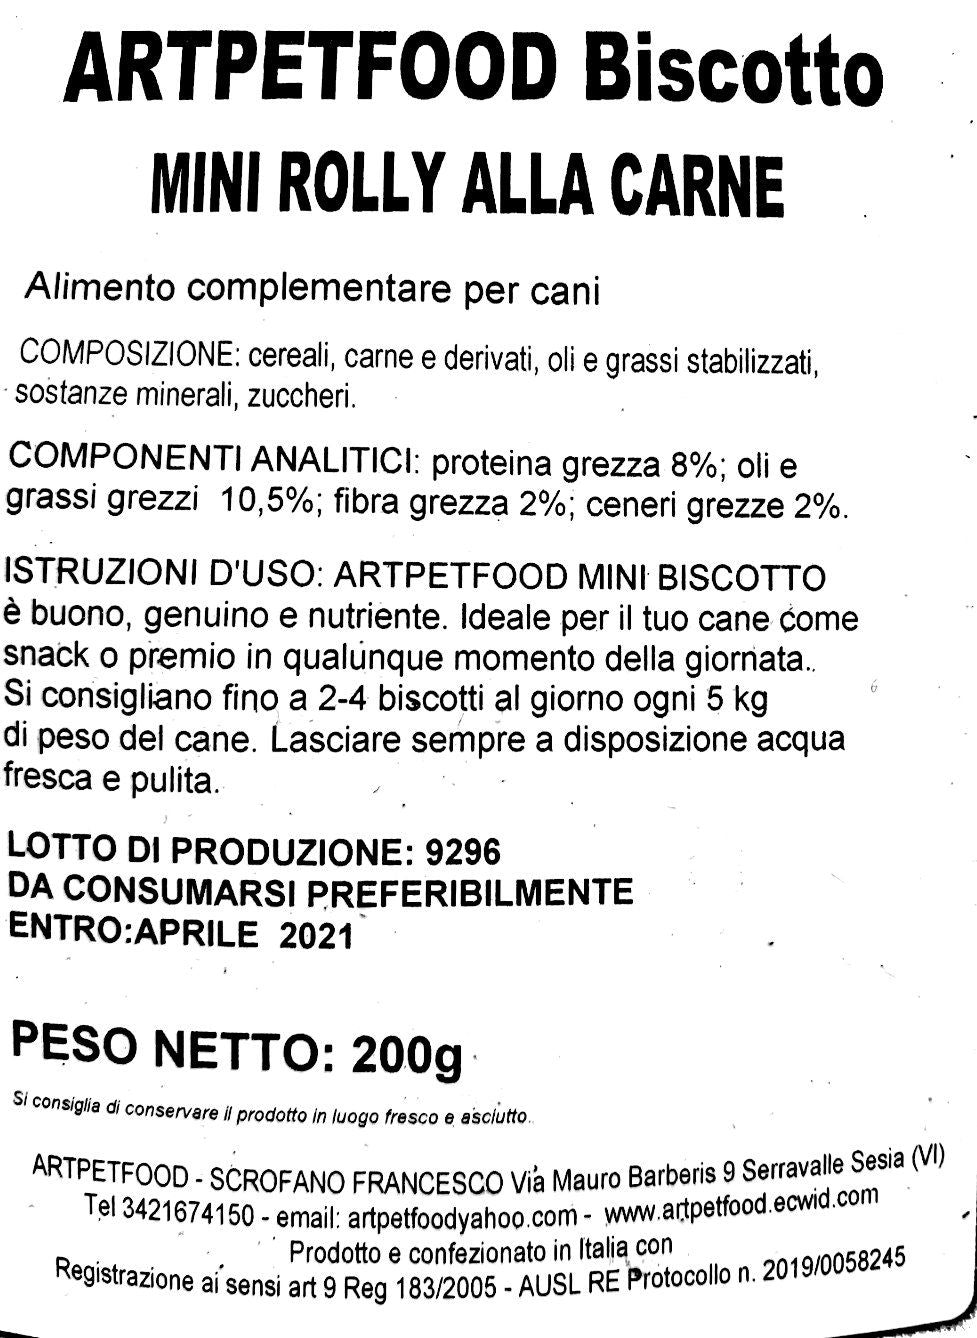 Biscotti Artigianali Mini Rolly Alla Carne - artpetfood